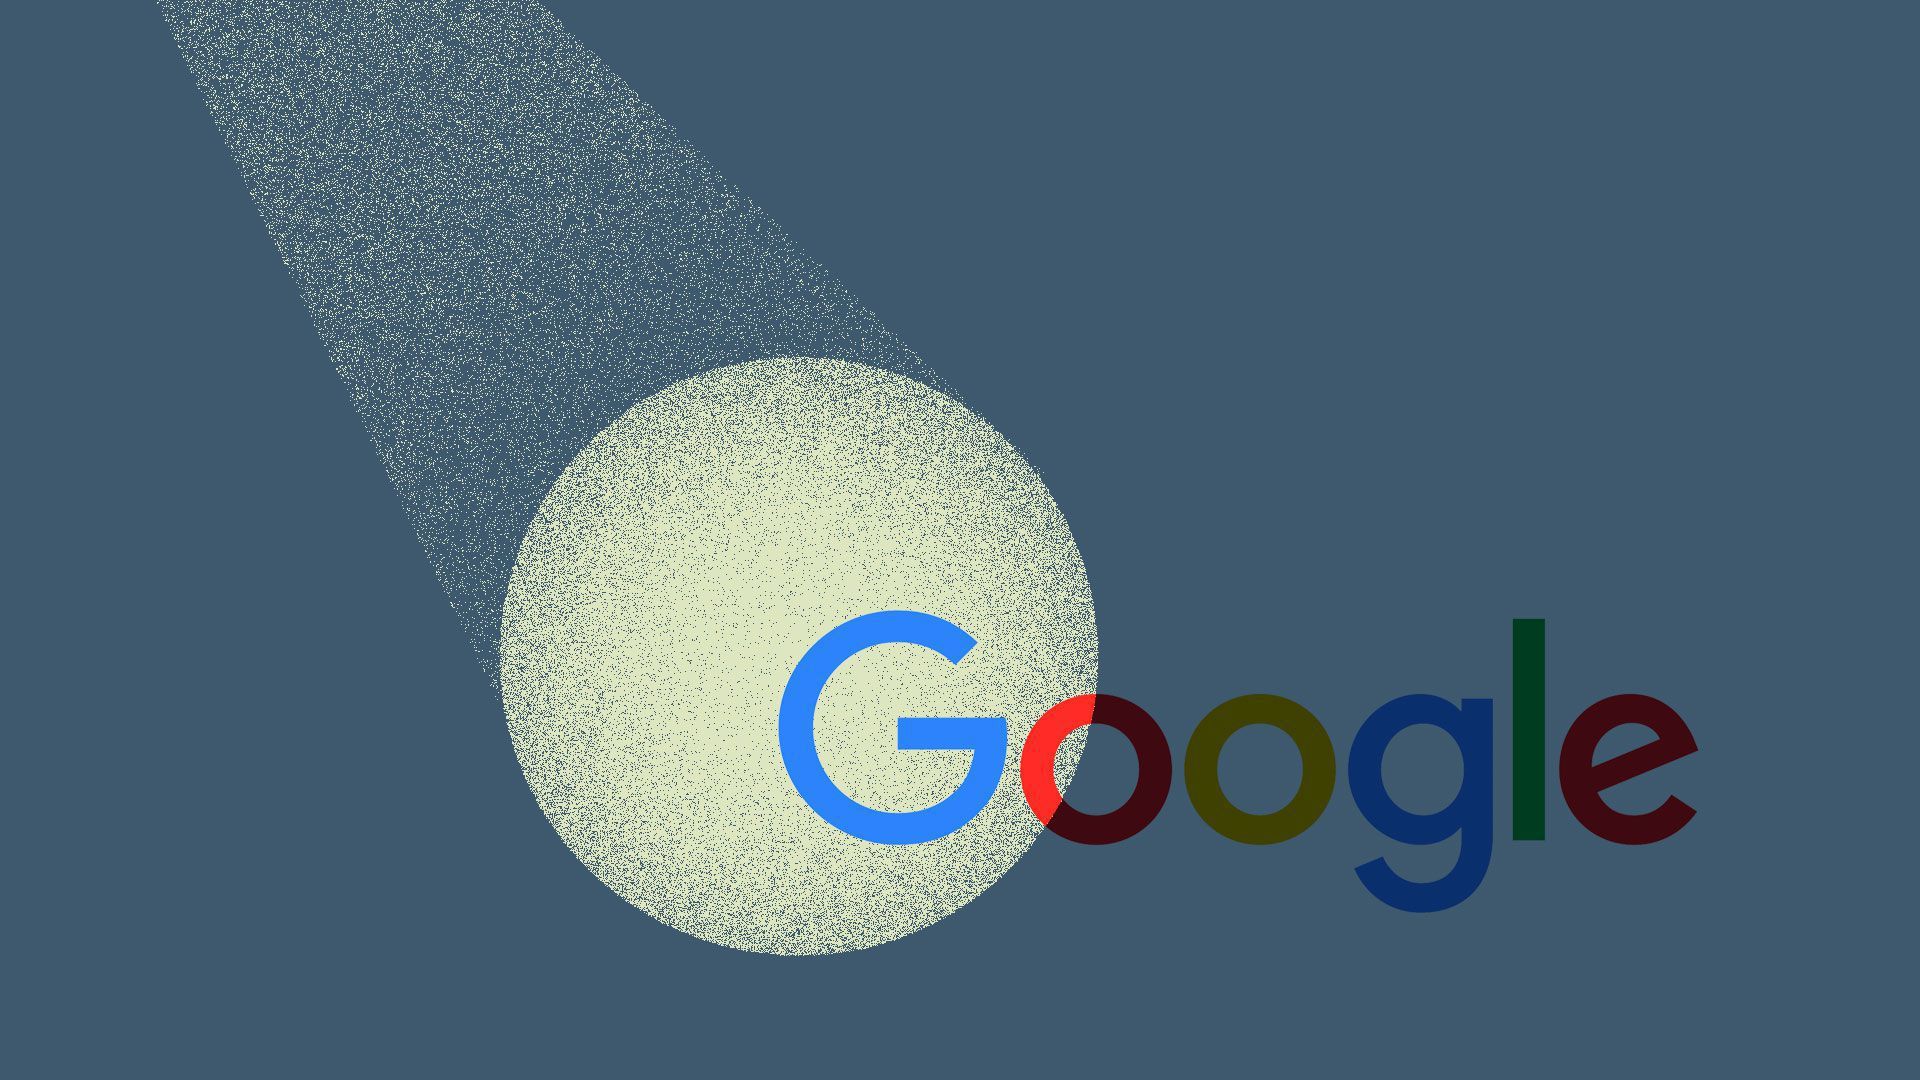 Illustration of a spotlight on the Google logo.